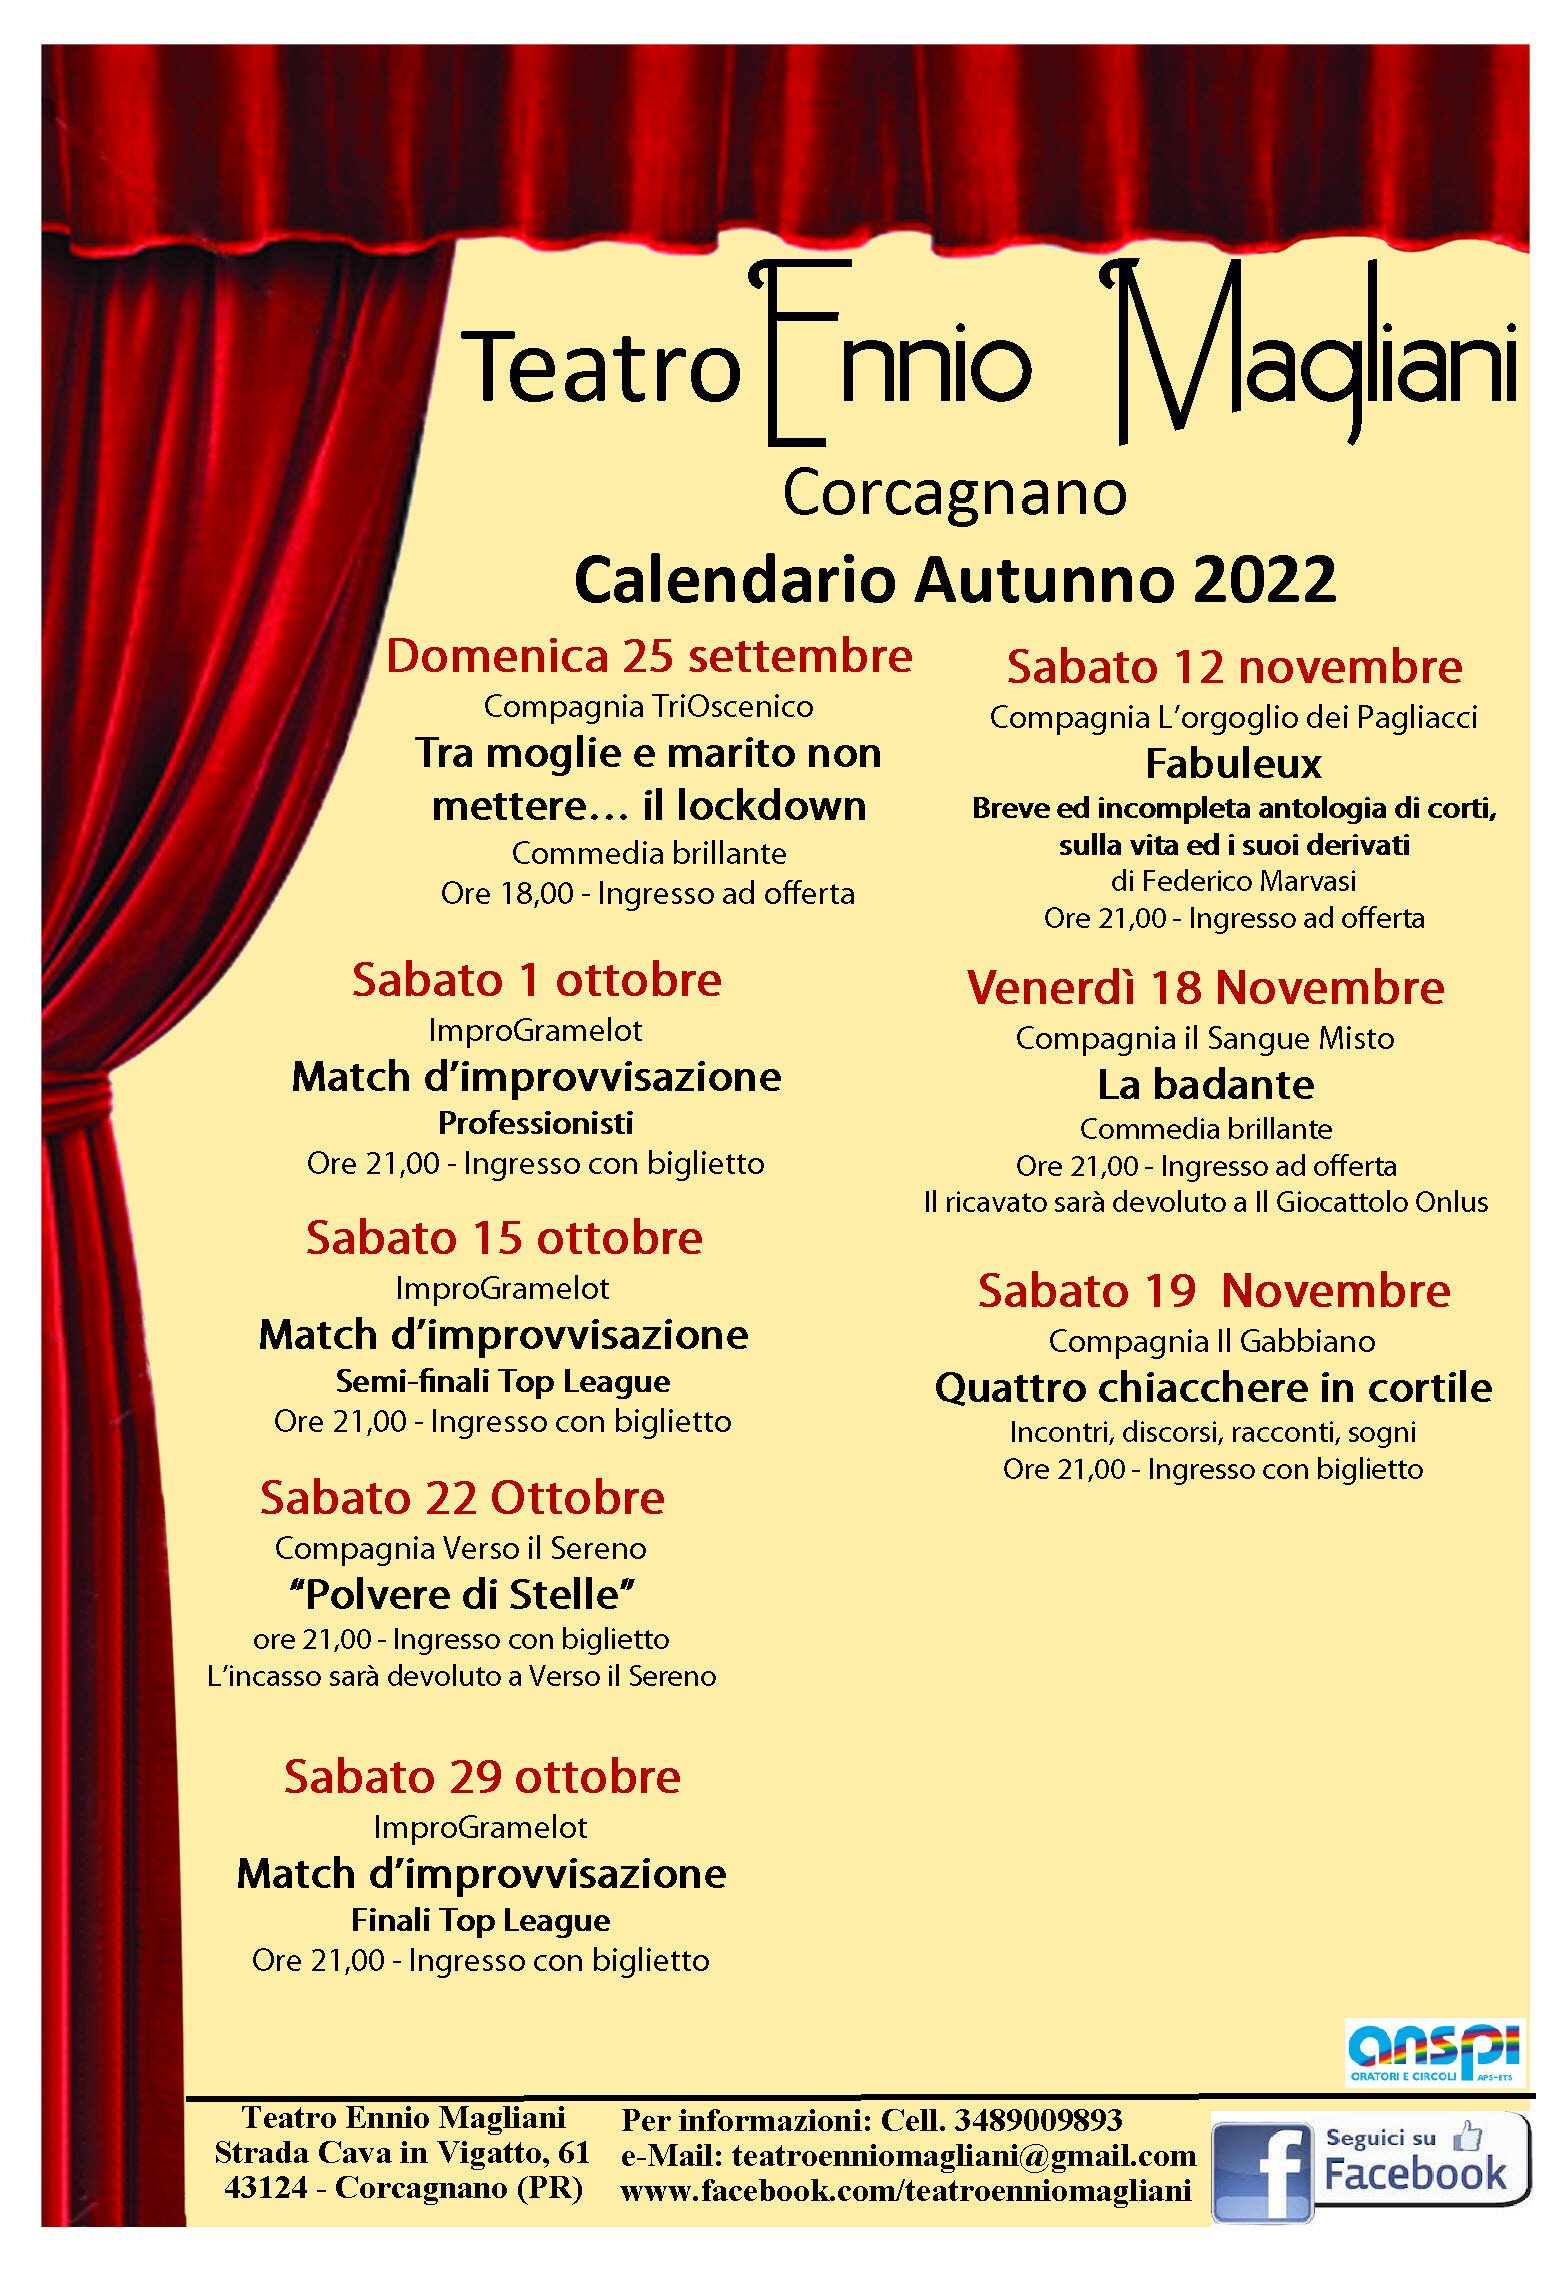 Teatro Ennio Magliani: calendario autunno 2022